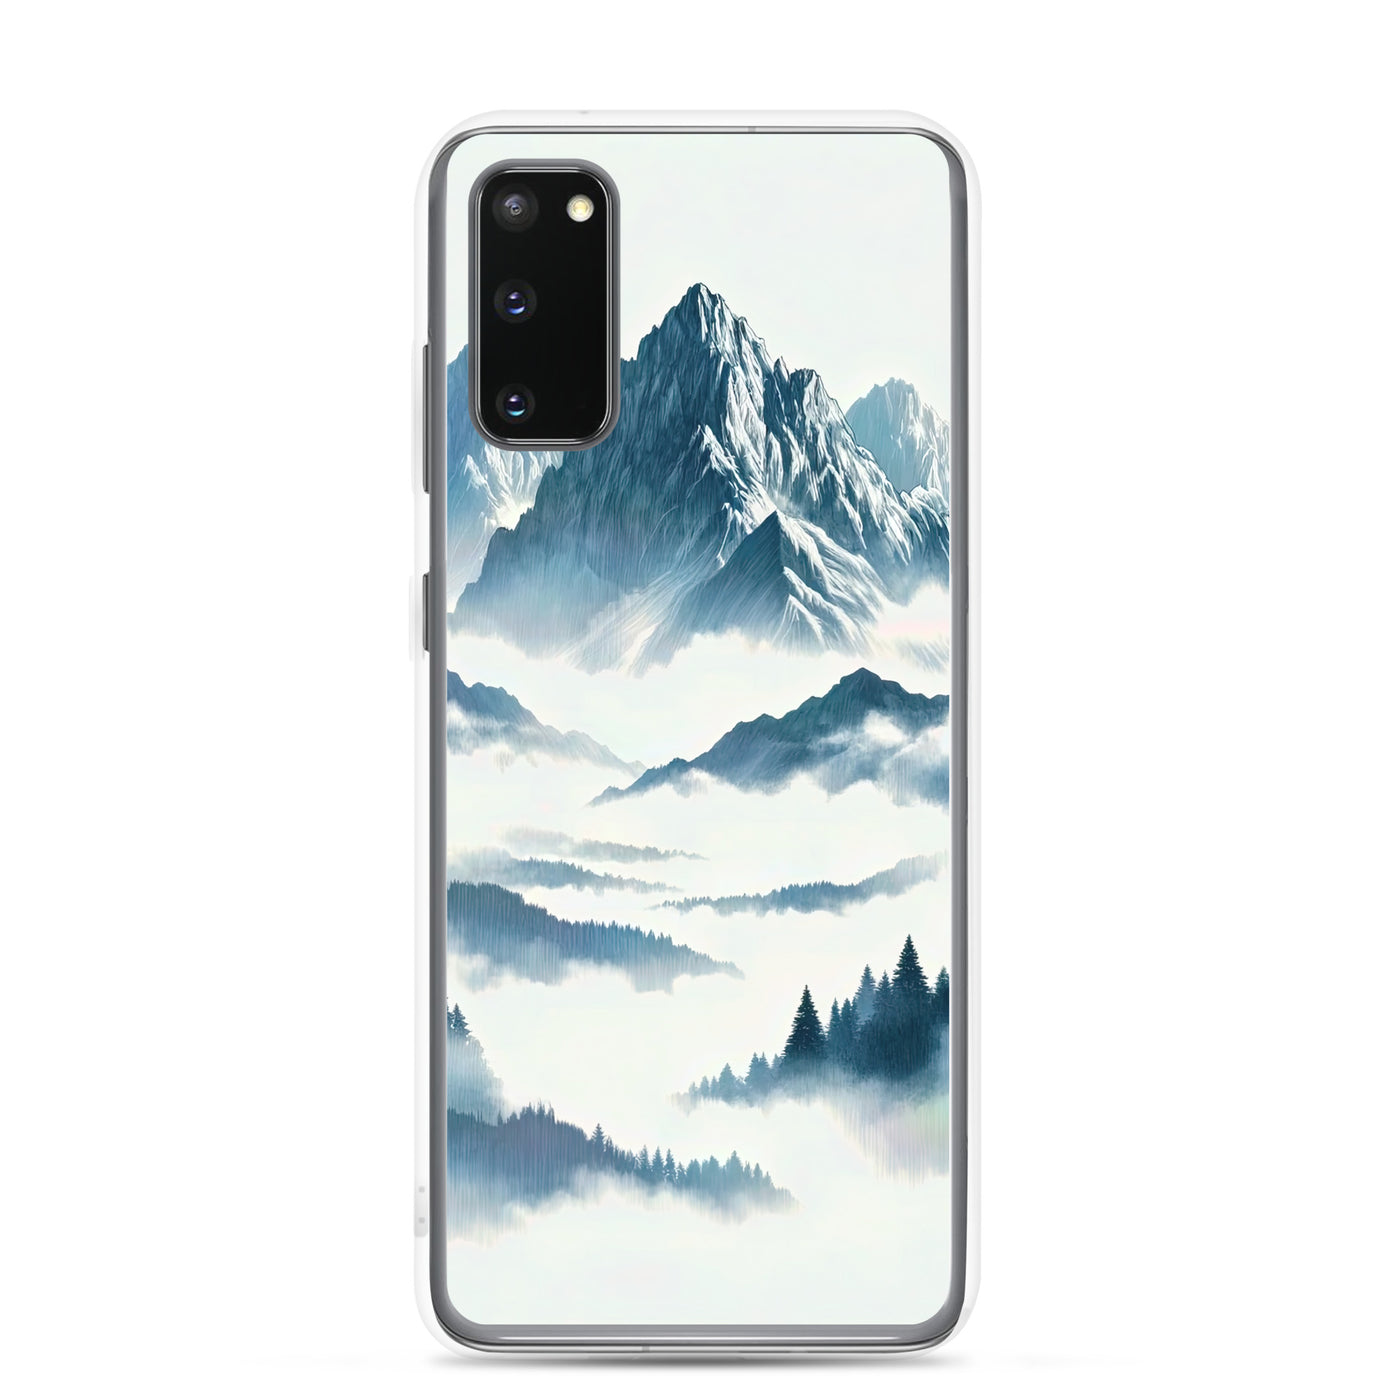 Nebeliger Alpenmorgen-Essenz, verdeckte Täler und Wälder - Samsung Schutzhülle (durchsichtig) berge xxx yyy zzz Samsung Galaxy S20